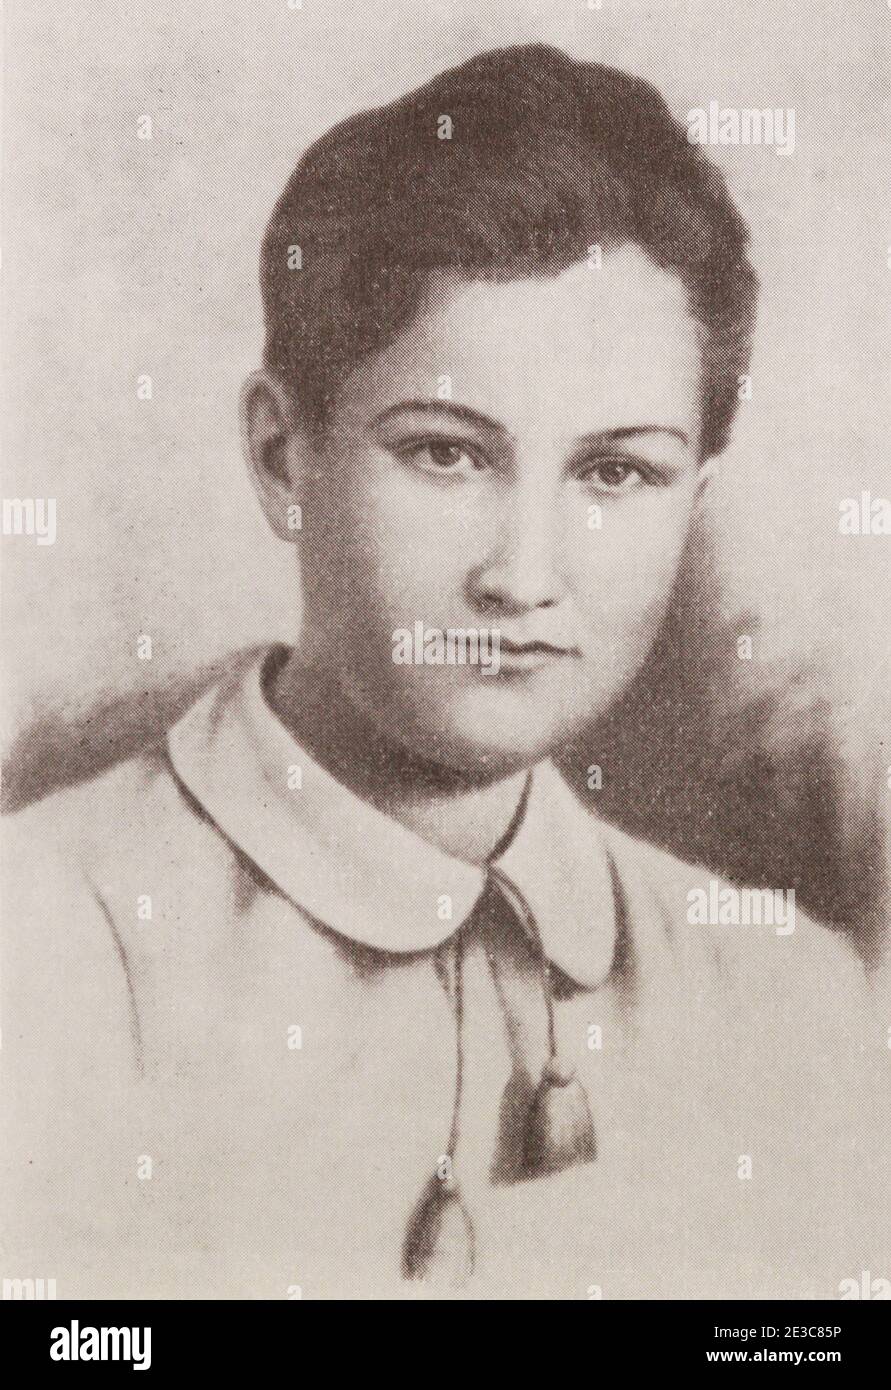 Porträt von Zoya Kosmodemyanskaya. Soja Anatoljewna Kosmodemjanskaja (13. September 1923 – 29. November 1941) war ein sowjetischer Partisane. Sie wurde nach Sabotageakten gegen die eindringenden Armeen Nazi-Deutschlands hingerichtet; nachdem Geschichten über ihren Trotz gegenüber ihren Entführer auftauchten, wurde sie posthum zur Helden der Sowjetunion erklärt. Sie wurde zu einer der verehrtesten Heldinnen der Sowjetunion. Stockfoto